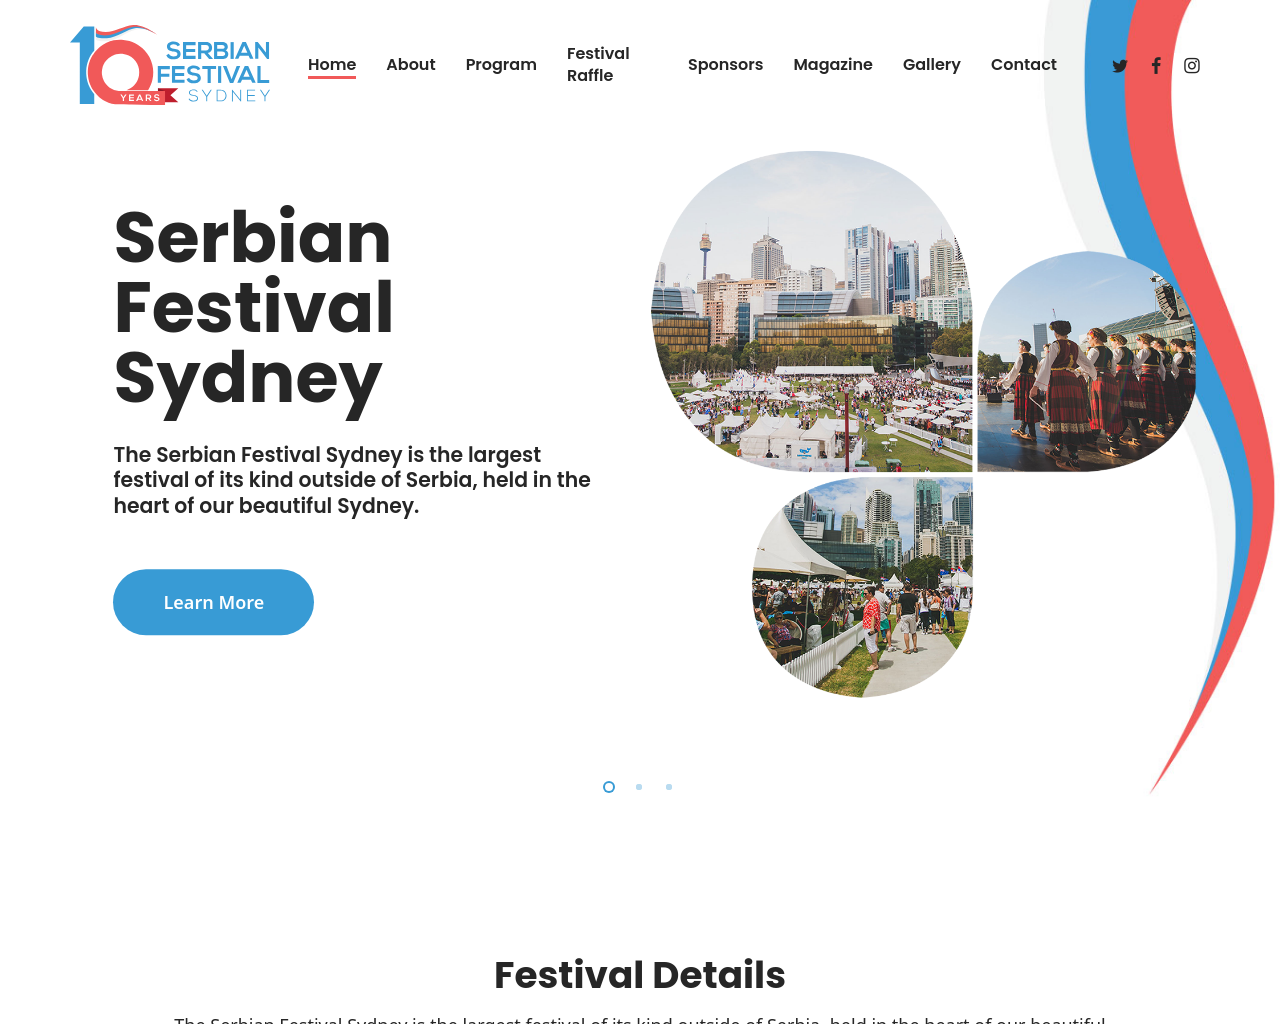 serbianfestival.com.au